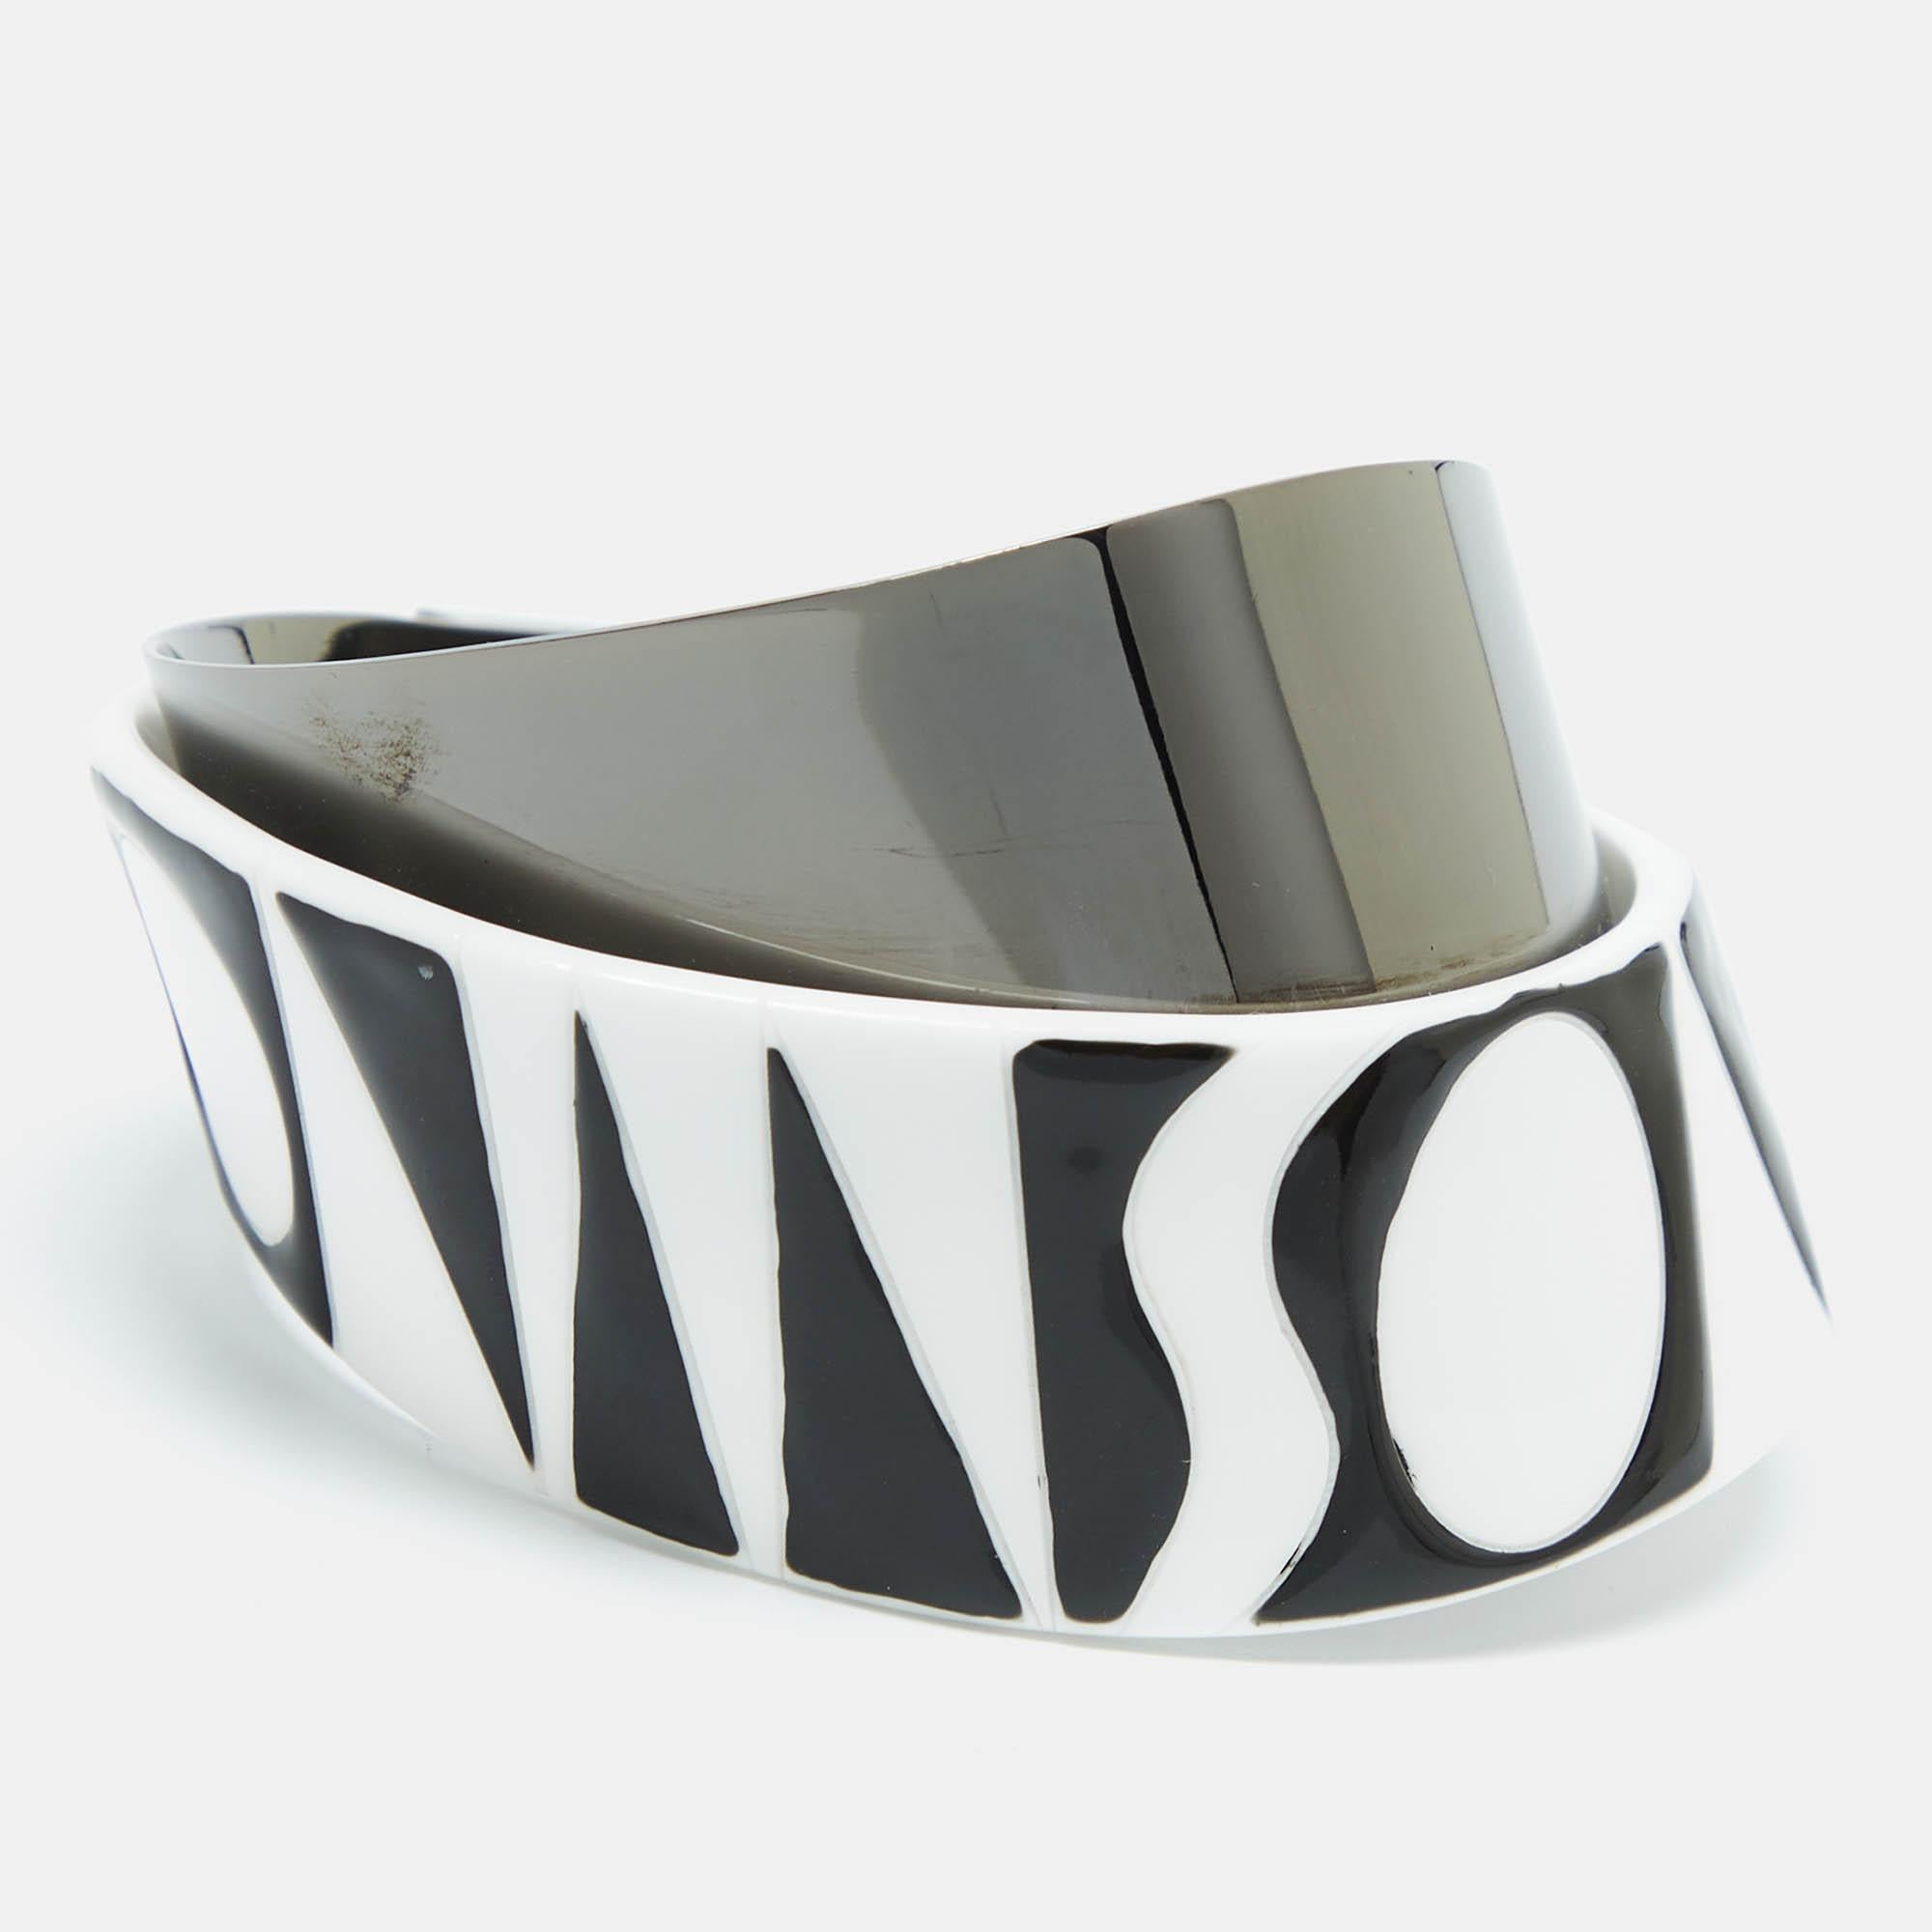 Ce bracelet manchette de Missoni, à l'allure amusante et audacieuse, sera votre nouvel accessoire favori. Il est doté d'un corps monochrome stylisé dans un design unique avec de la résine et du métal de couleur gunmetal. Il est confortable à porter